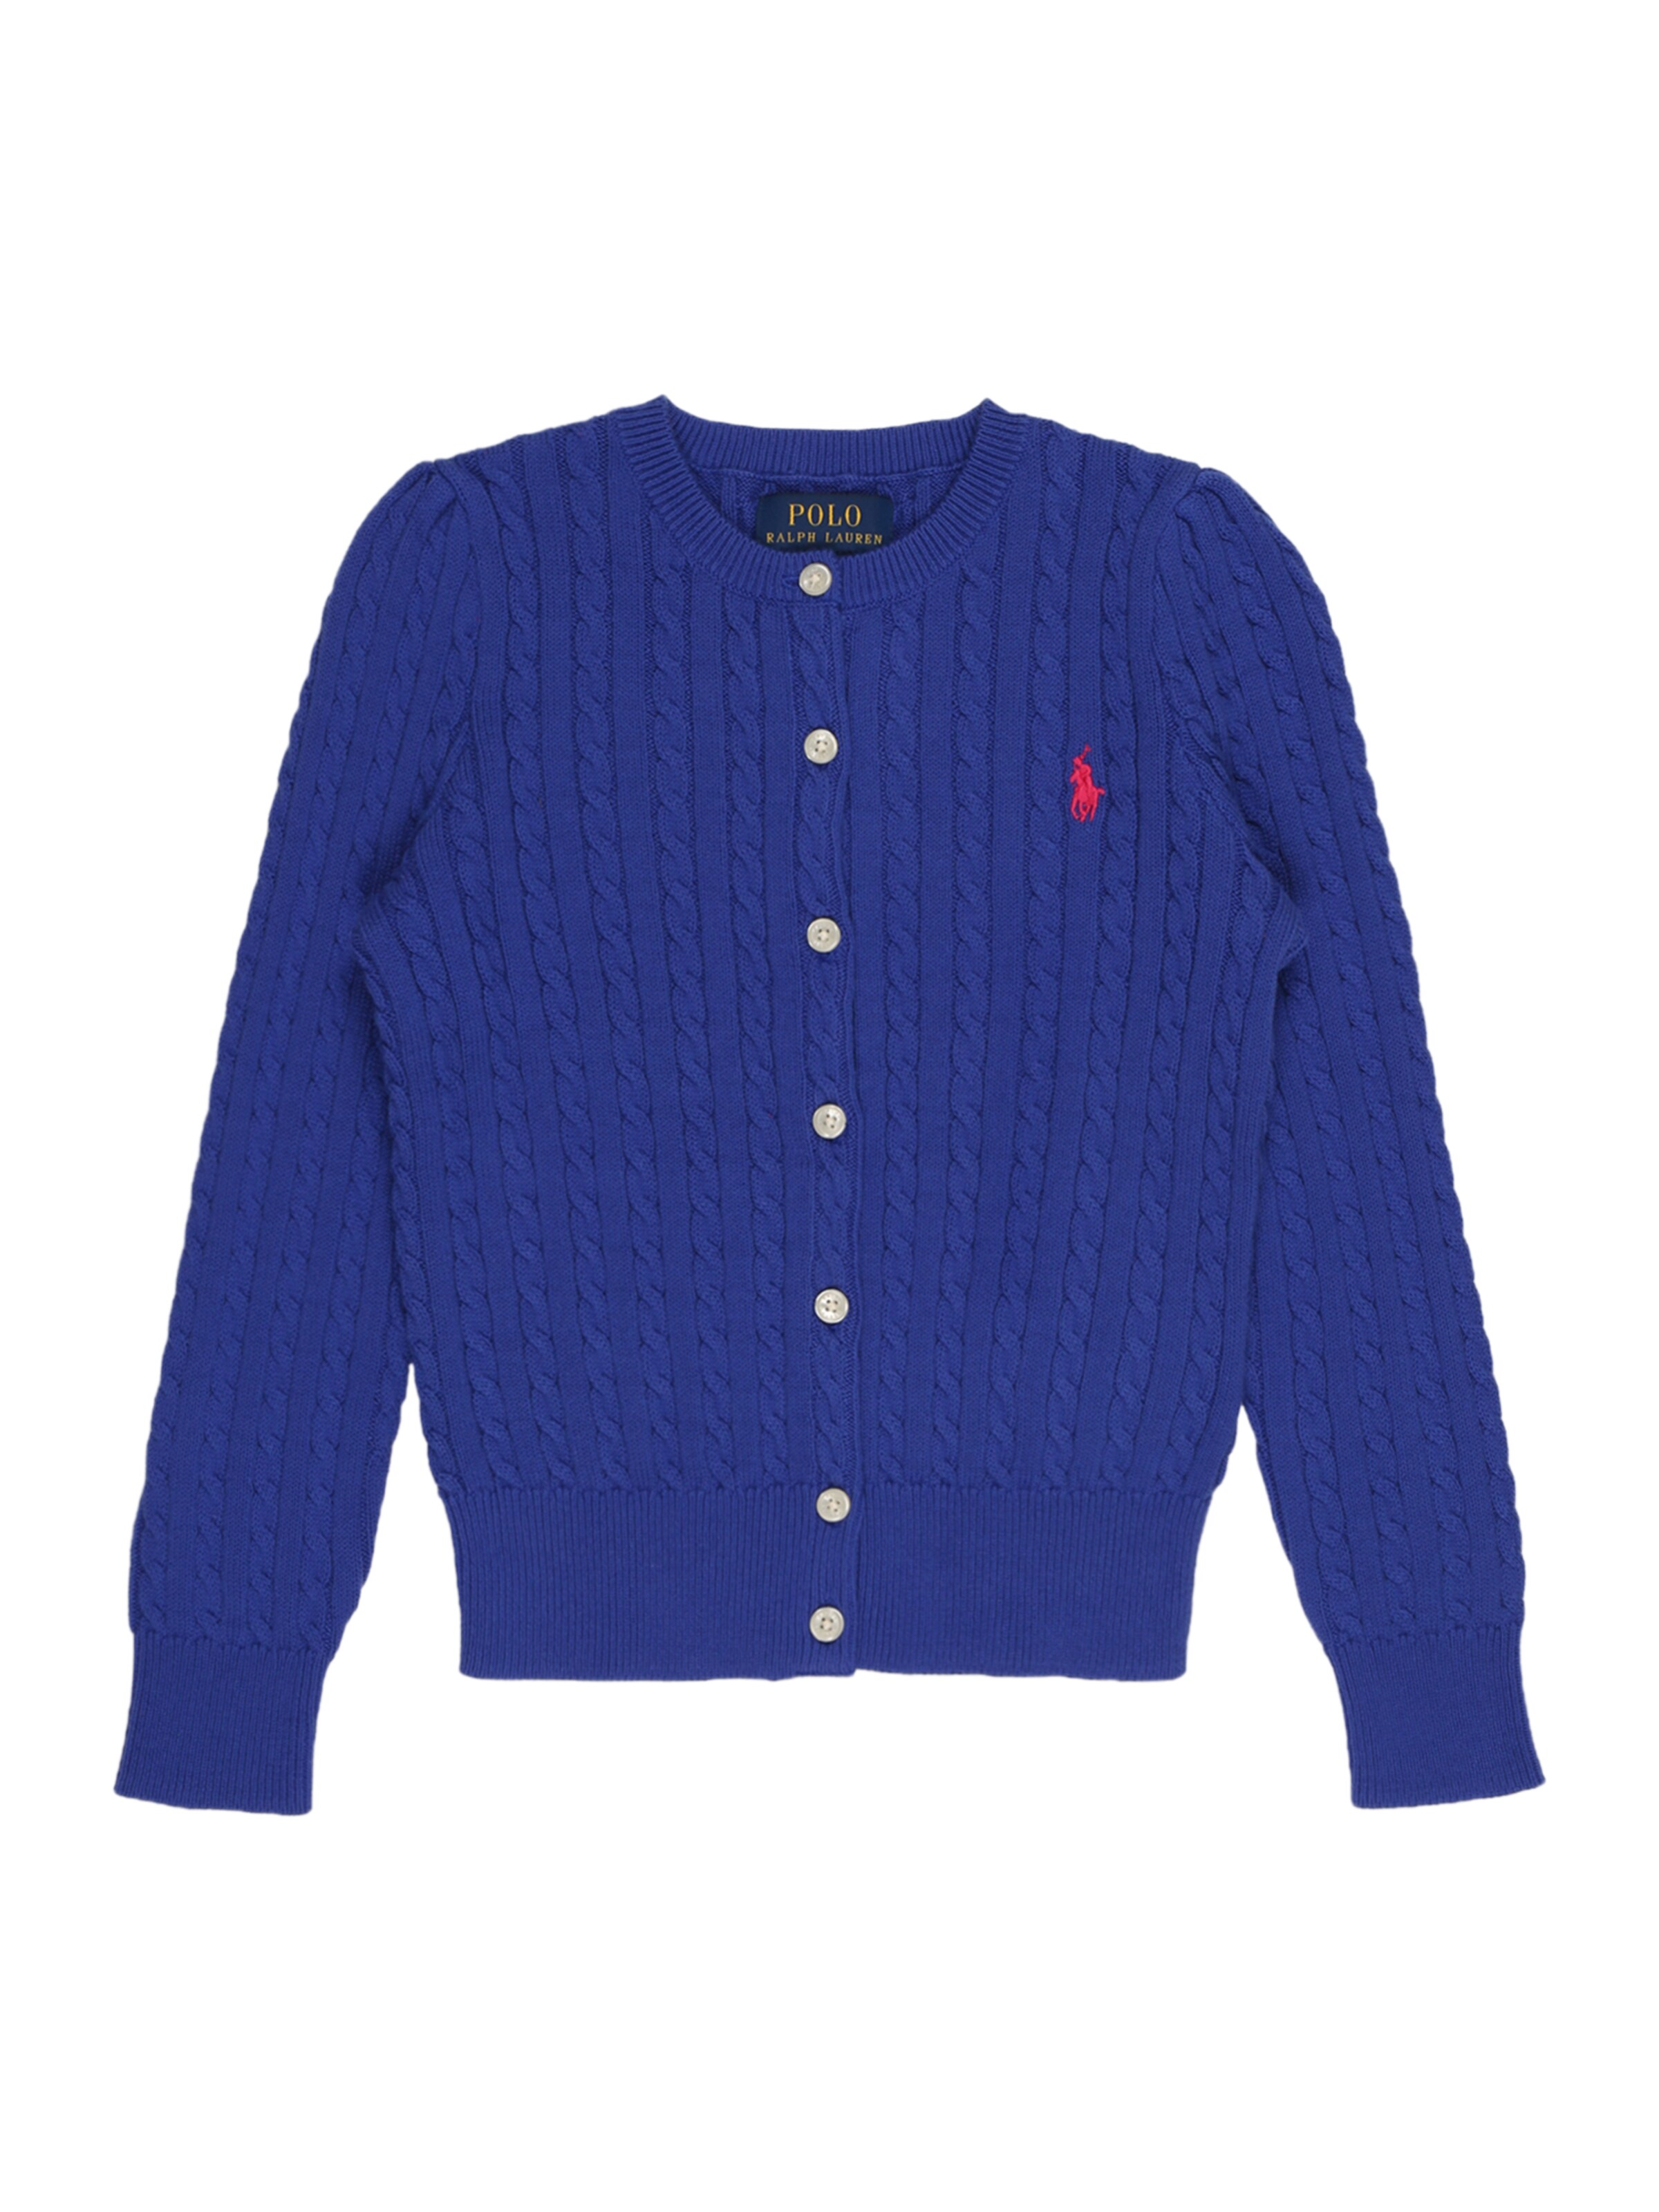 Polo Ralph Lauren Mädchen Pullover Gr DE 176 Mädchen Bekleidung Pullover & Strickjacken Pullover 